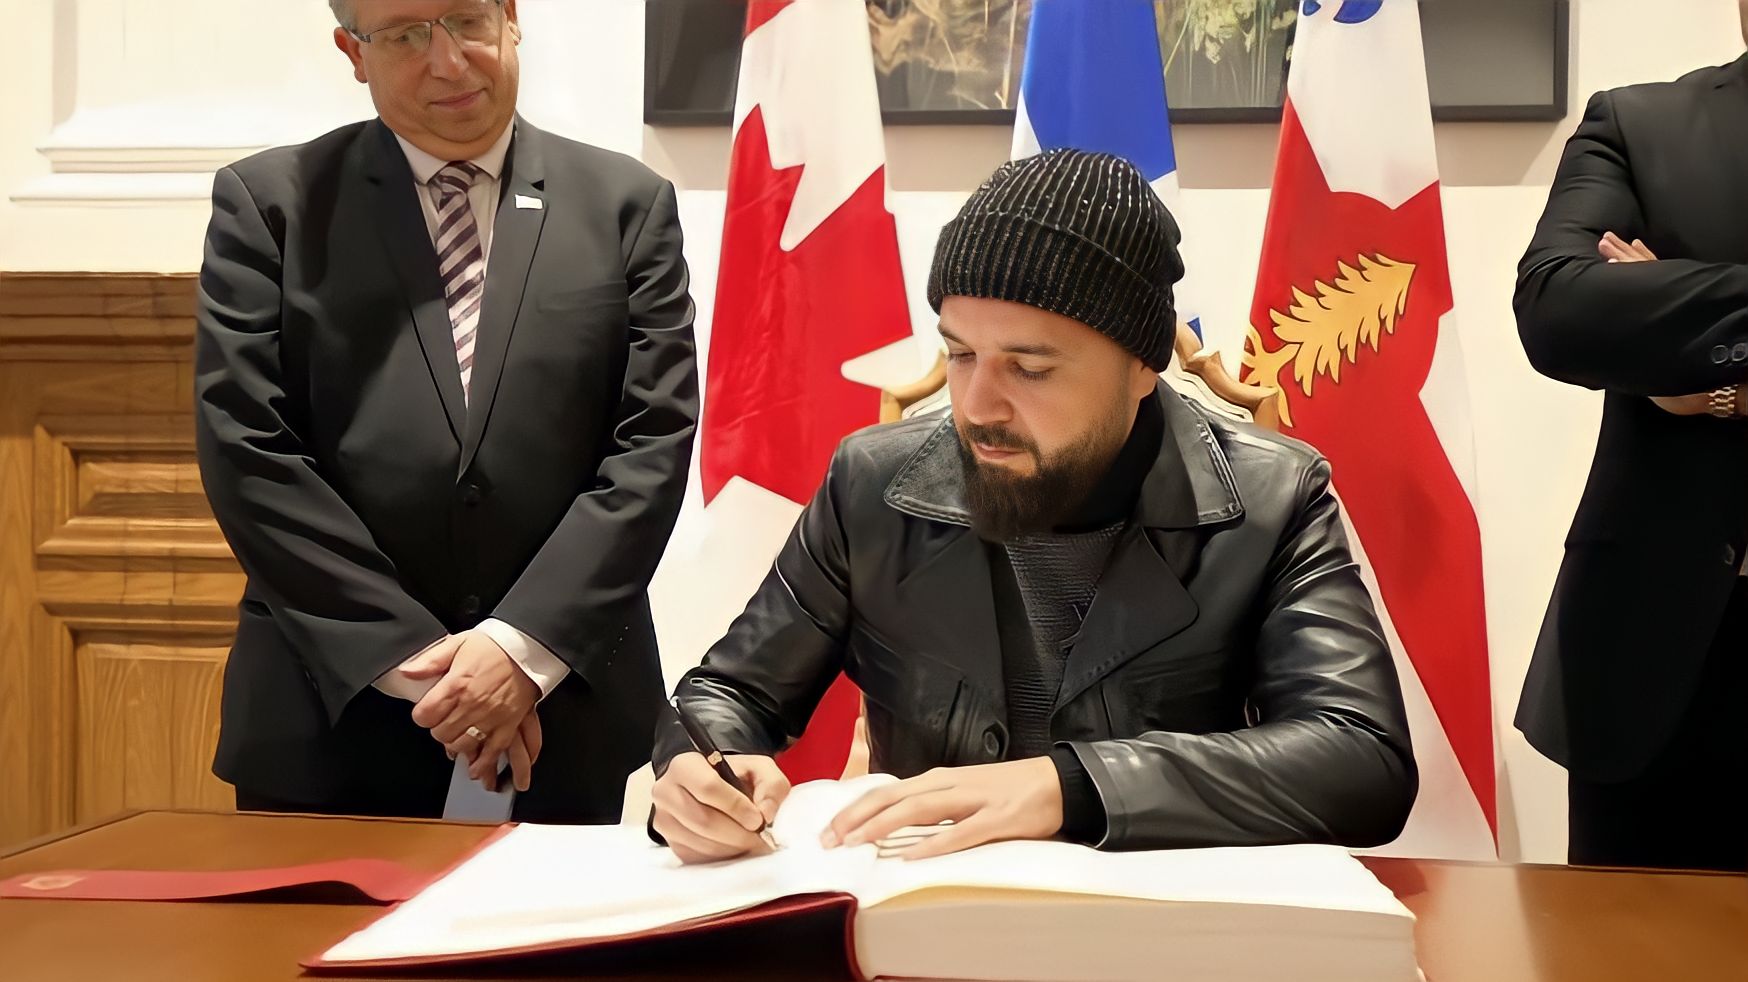 الدوزي يوثق لحظة توقيعه على الكتاب الذهبي بمونتريال الكندية